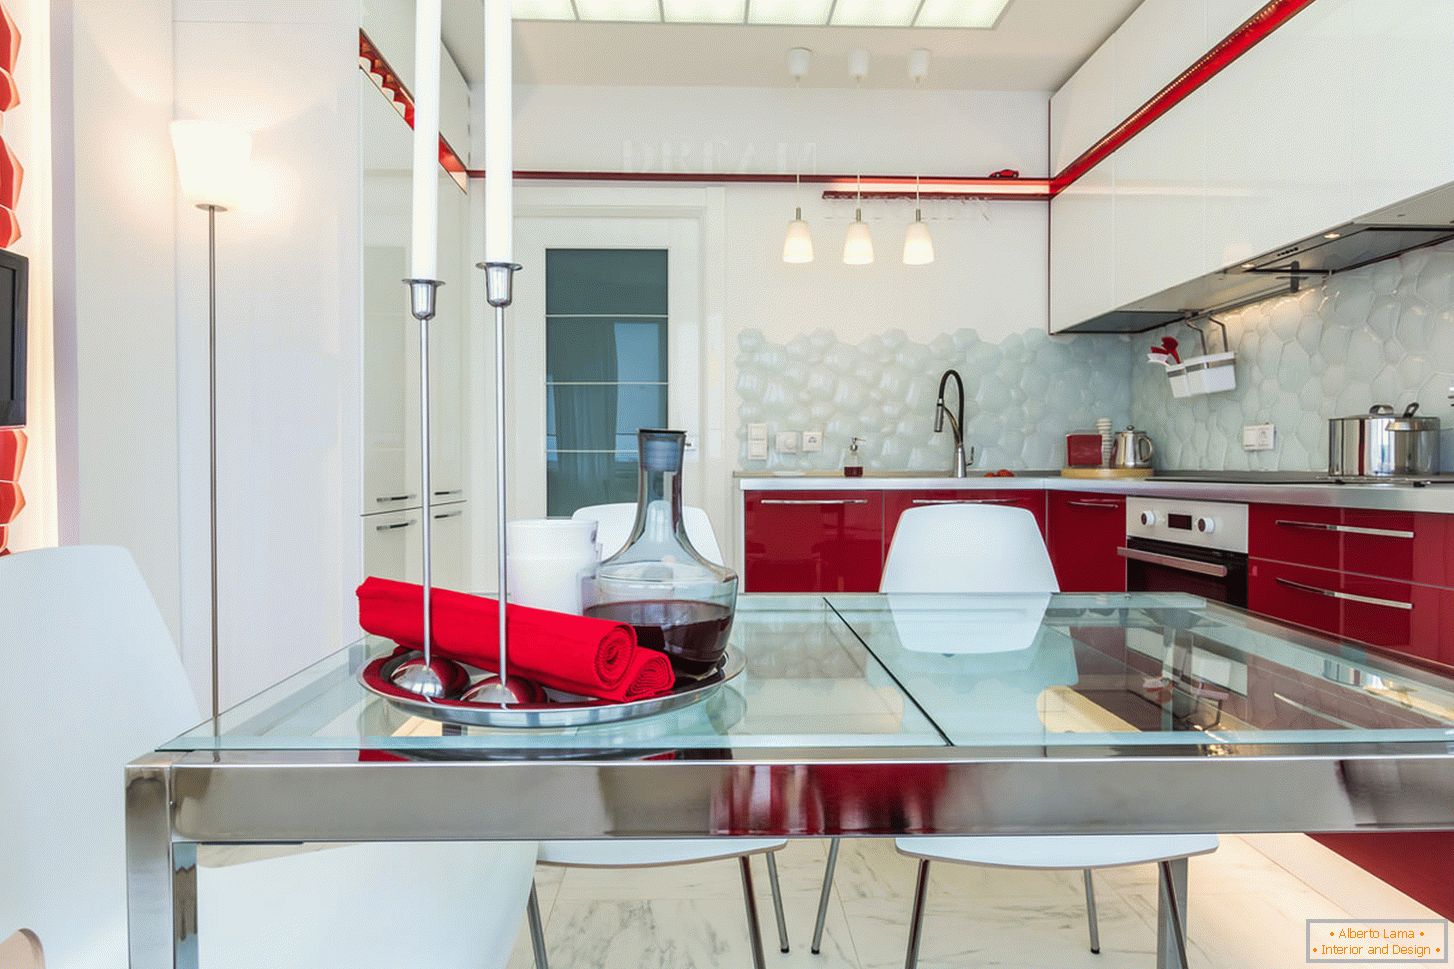 Chic notranja kuhinja v beli in rdeči barvi